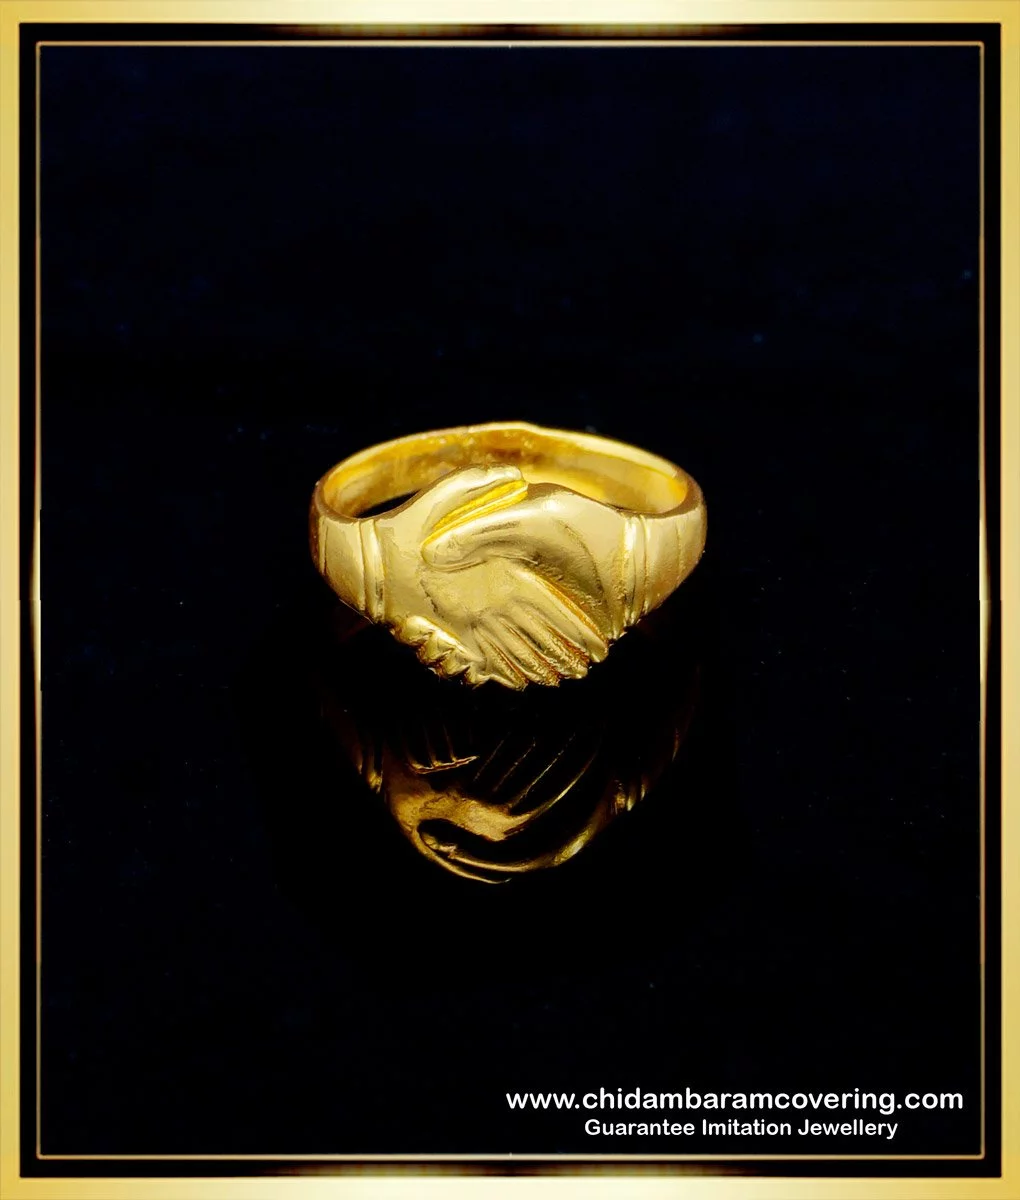 Classic Unisex Gold Wedding Ring (3mm) - Aurelius Jewelry